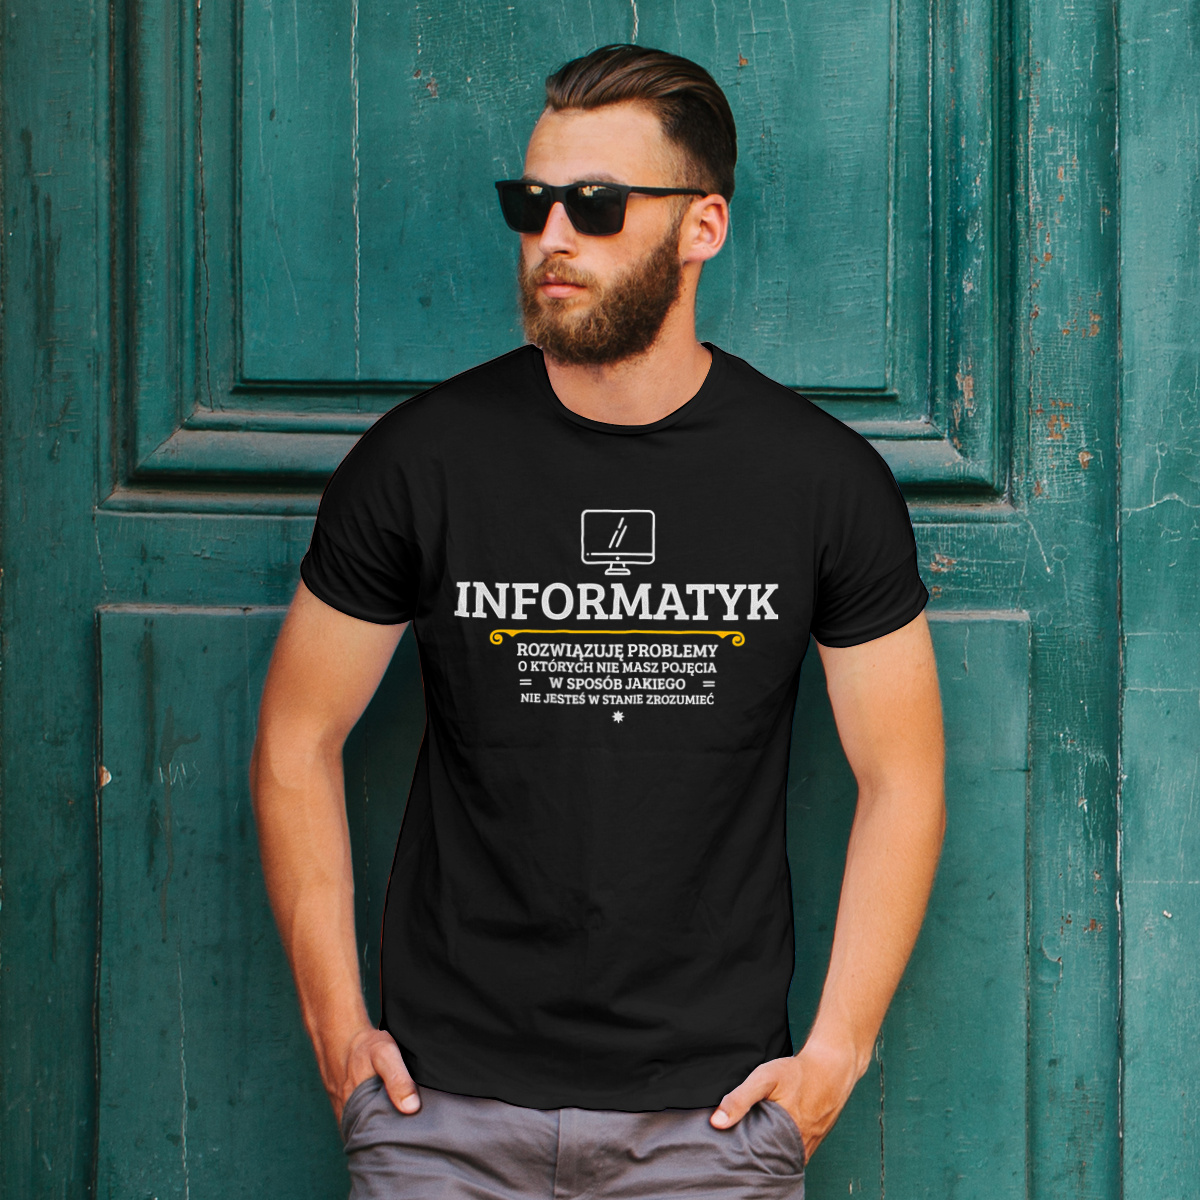 Informatyk - Rozwiązuje Problemy O Których Nie Masz Pojęcia - Męska Koszulka Czarna